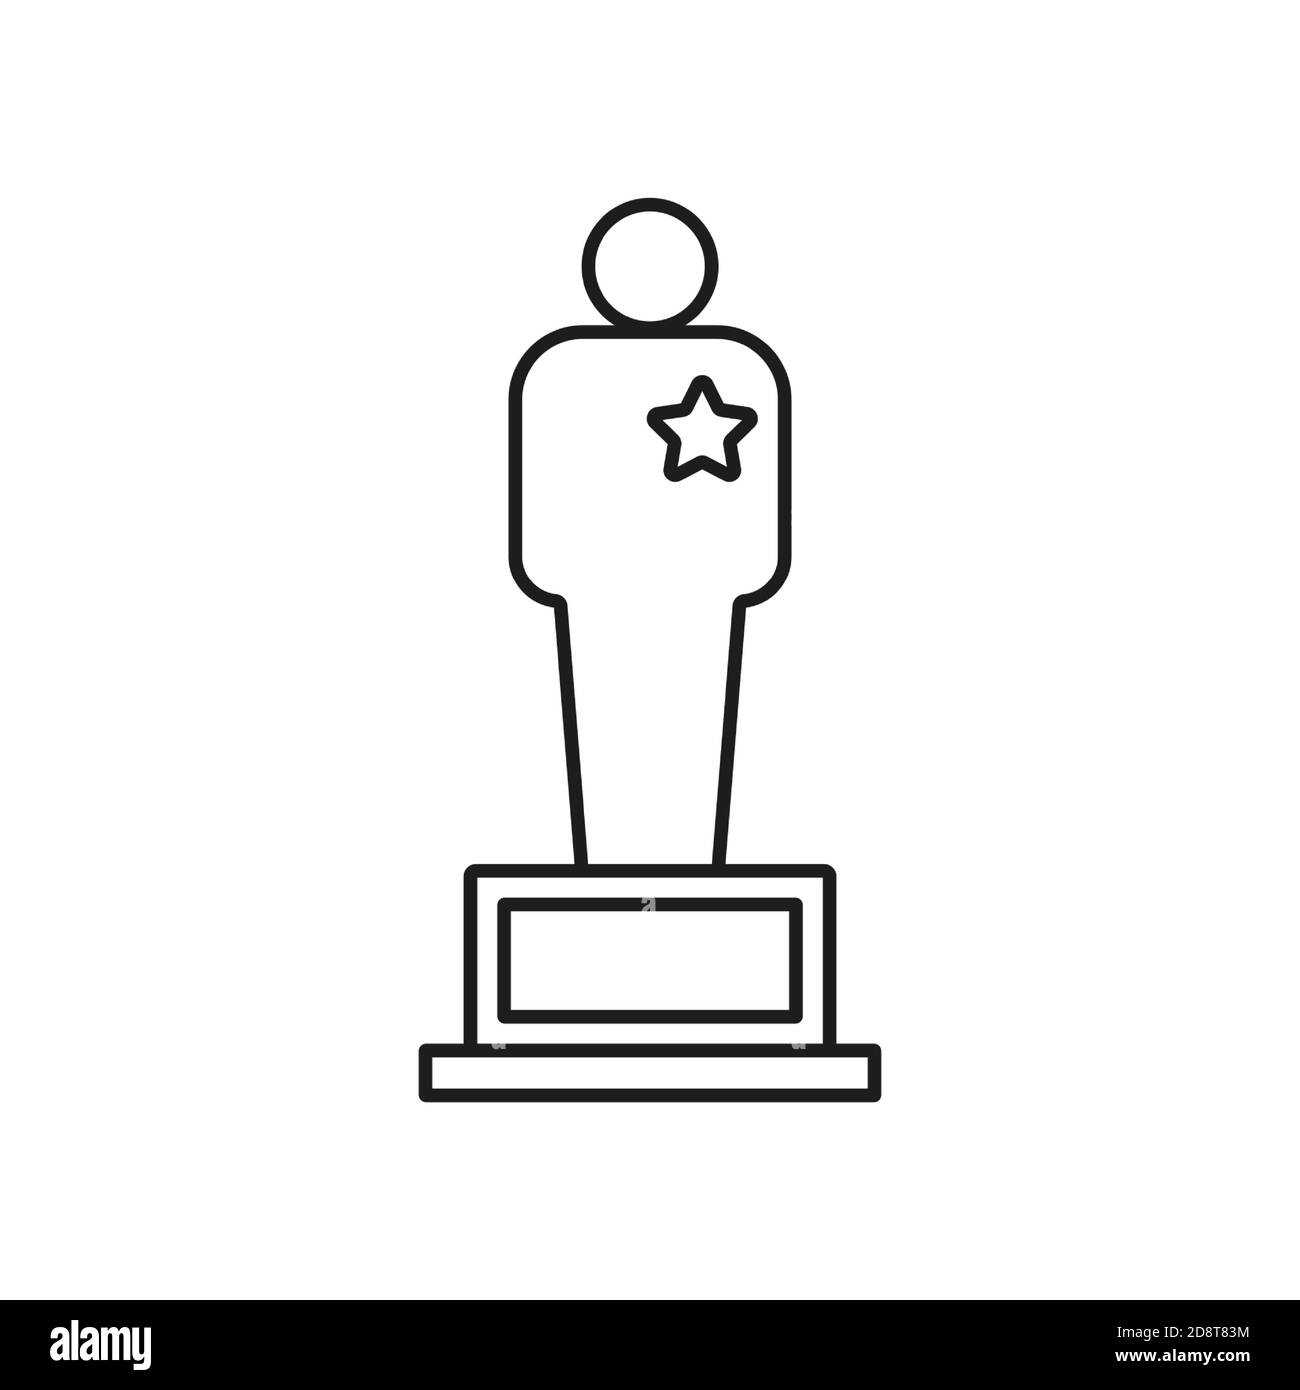 L'icona di Movie award è un elemento dell'icona del film per il concetto mobile e le app Web. L'icona del premio per i film in linea sottile può essere utilizzata per il Web e i dispositivi mobili. Icona Premium attivata Illustrazione Vettoriale